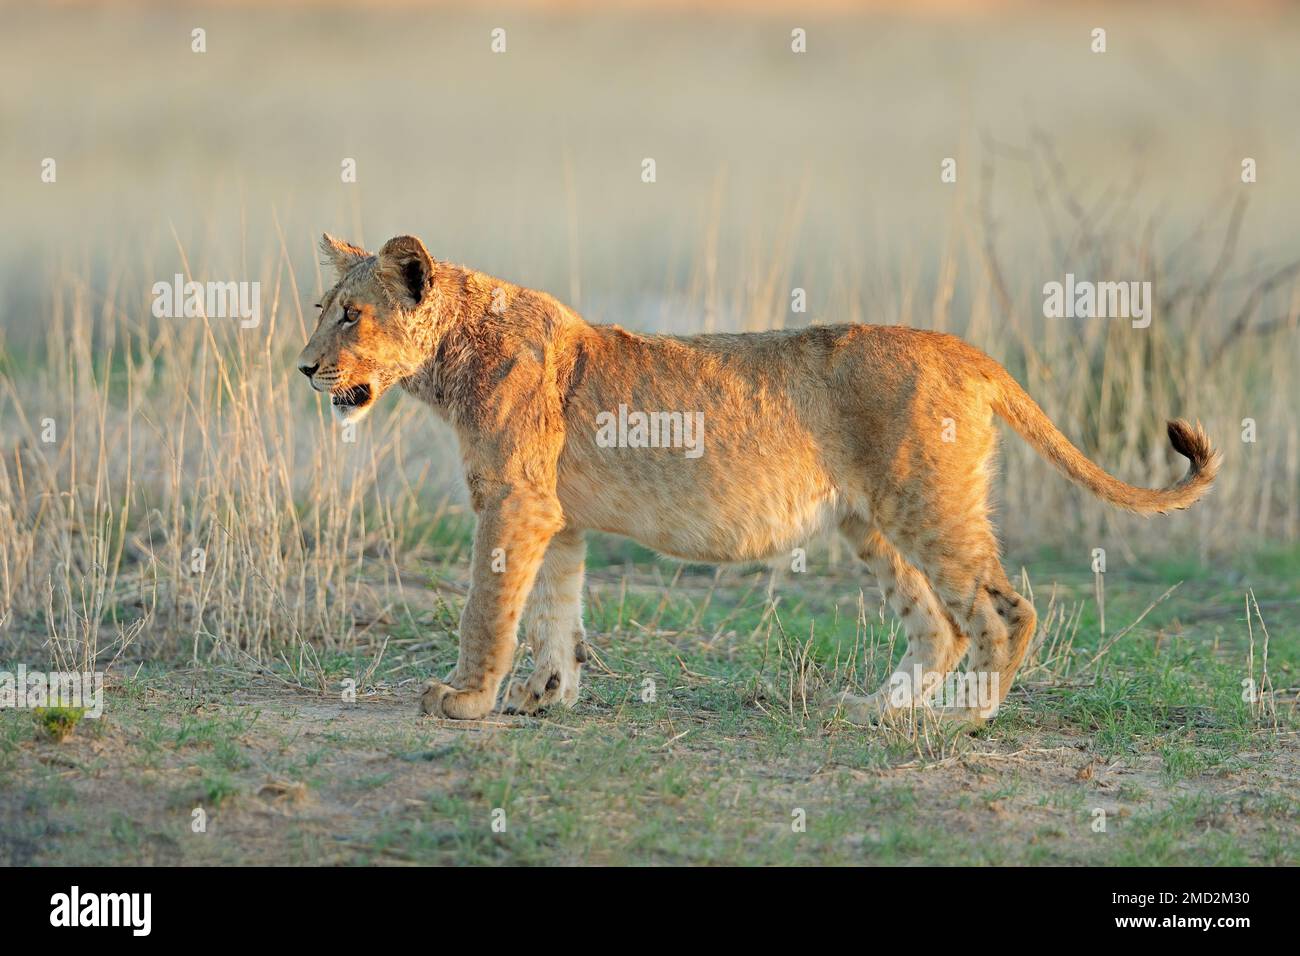 Alert African lion cub (Panthera leo), Kalahari desert, South Africa Stock Photo